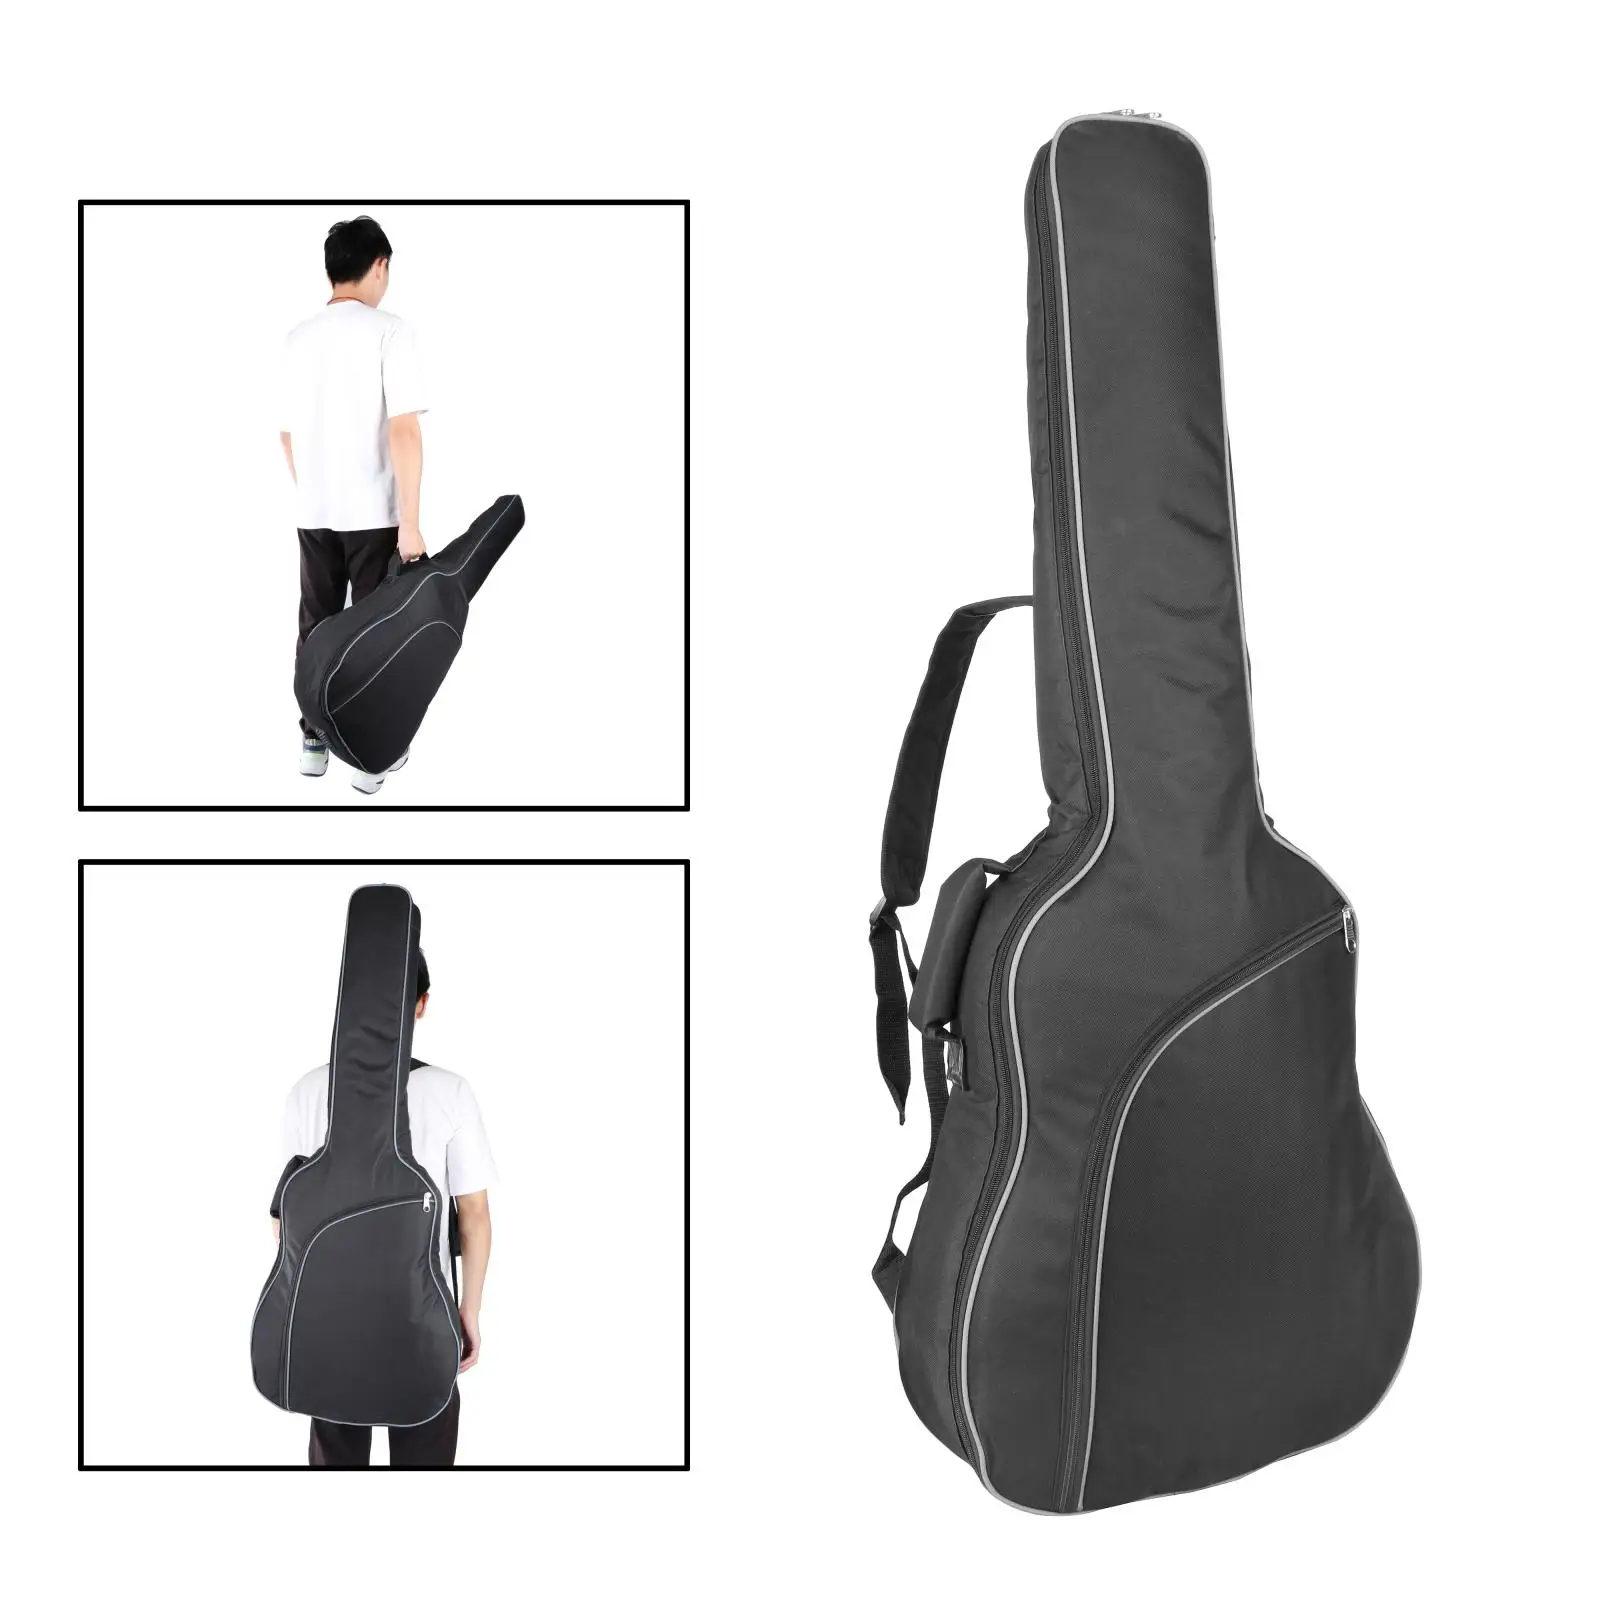 

Чехол для электрогитары, Регулируемый универсальный чехол 40 дюймов с подкладкой и регулируемым плечевым ремнем для гитары